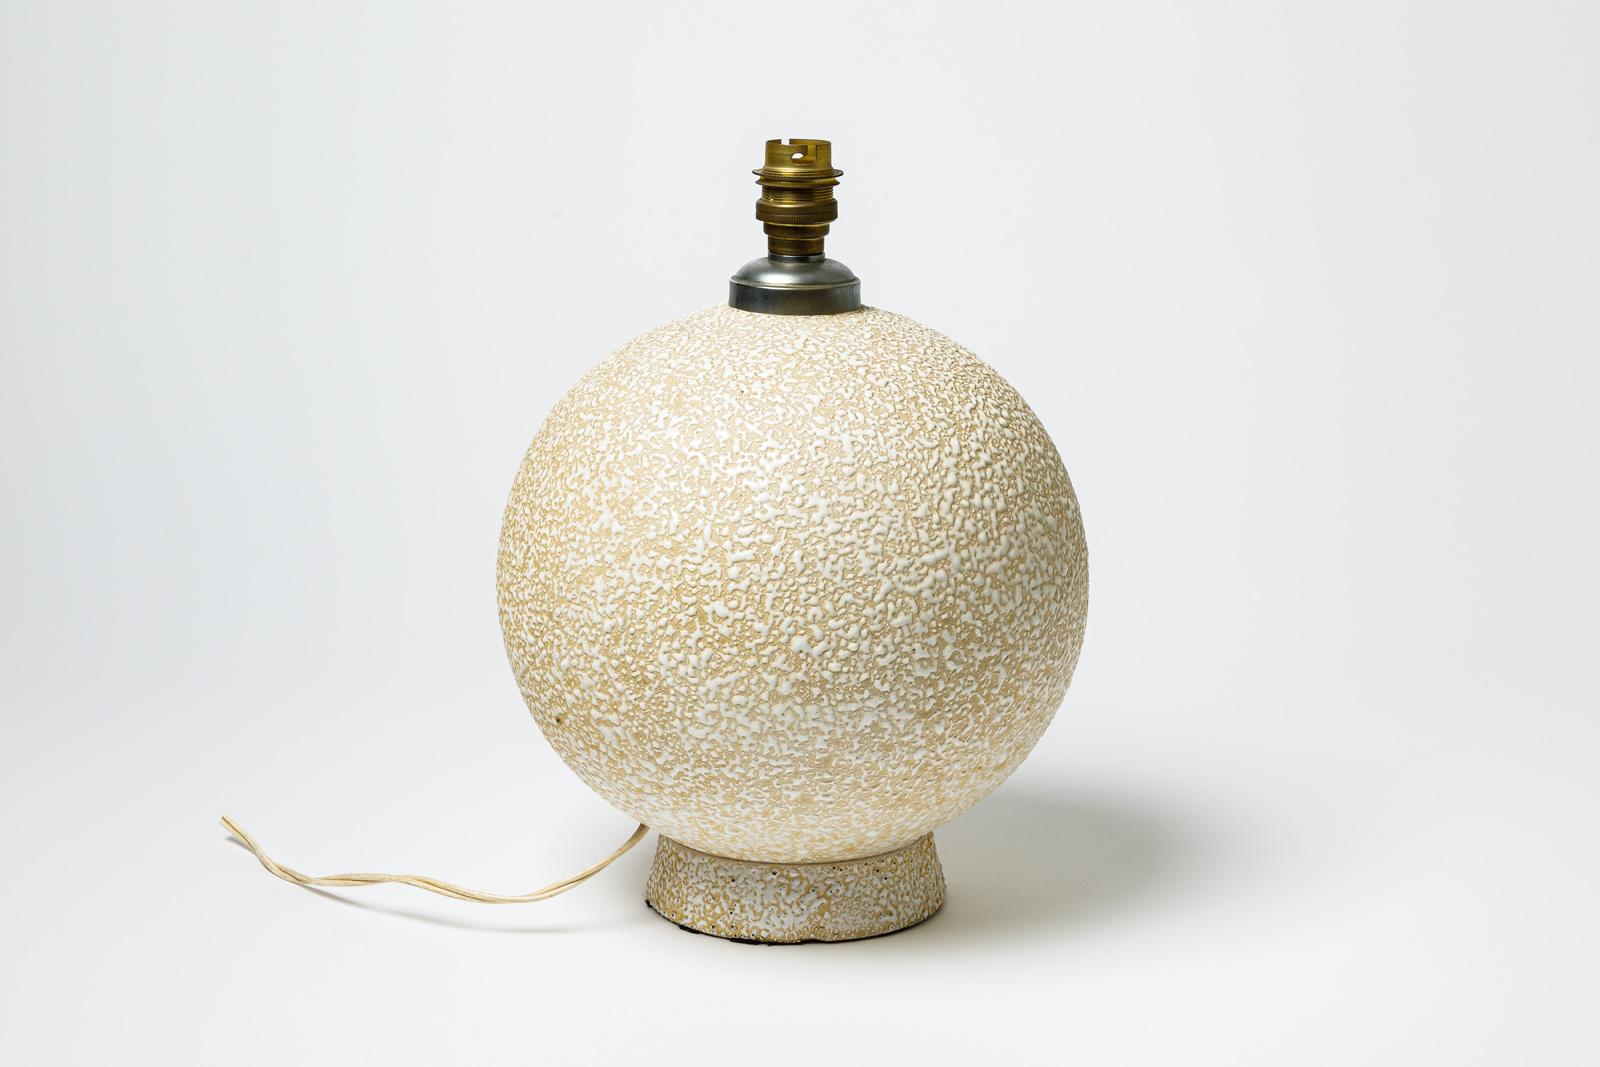 Beige und weiß glasierte Keramik-Tischlampe.
CIRCA 1920-1930.
H : 10,2' x 7,9' Zoll (nur Keramik).
Verkauft mit einem europäischen elektrischen System.